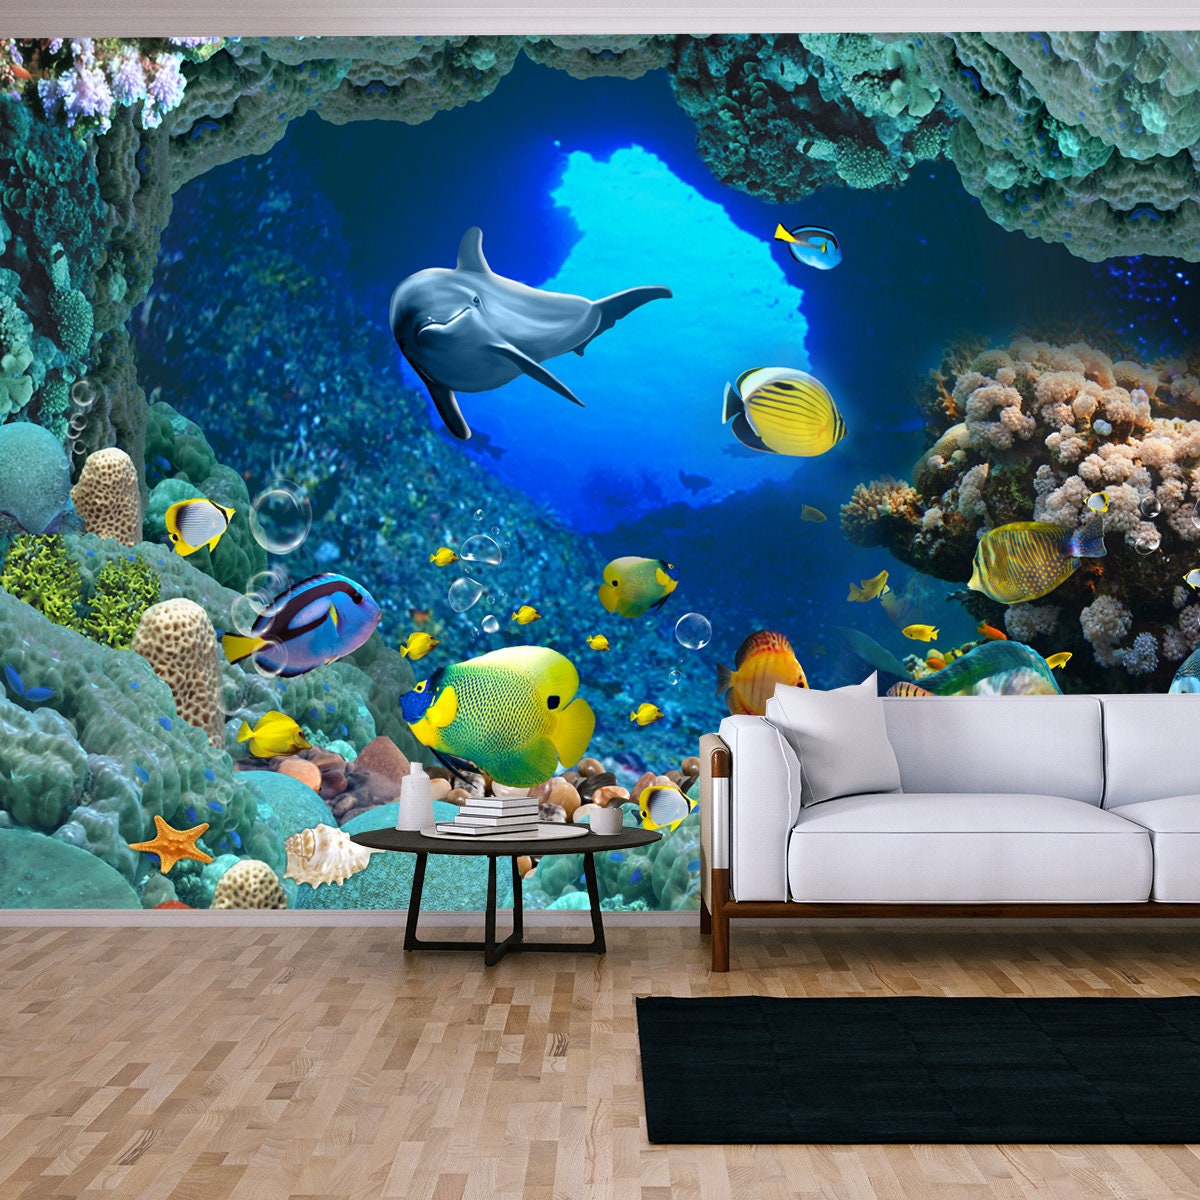 Underwater Fish Aquarium Illustration Background Wallpaper Living Room Mural